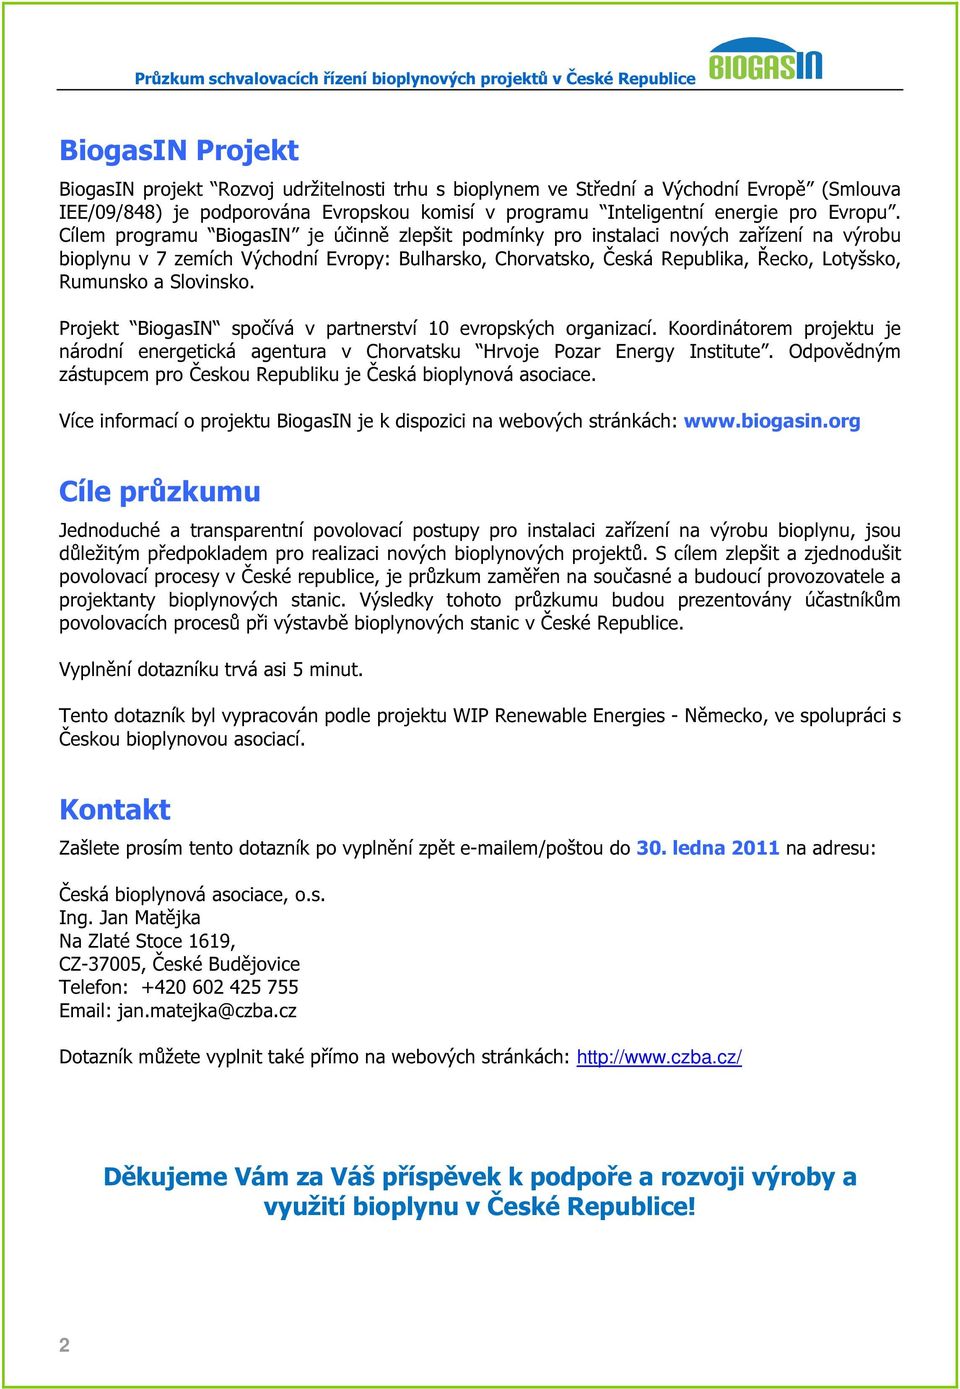 Slovinsko. Projekt BiogasIN spočívá v partnerství 10 evropských organizací. Koordinátorem projektu je národní energetická agentura v Chorvatsku Hrvoje Pozar Energy Institute.